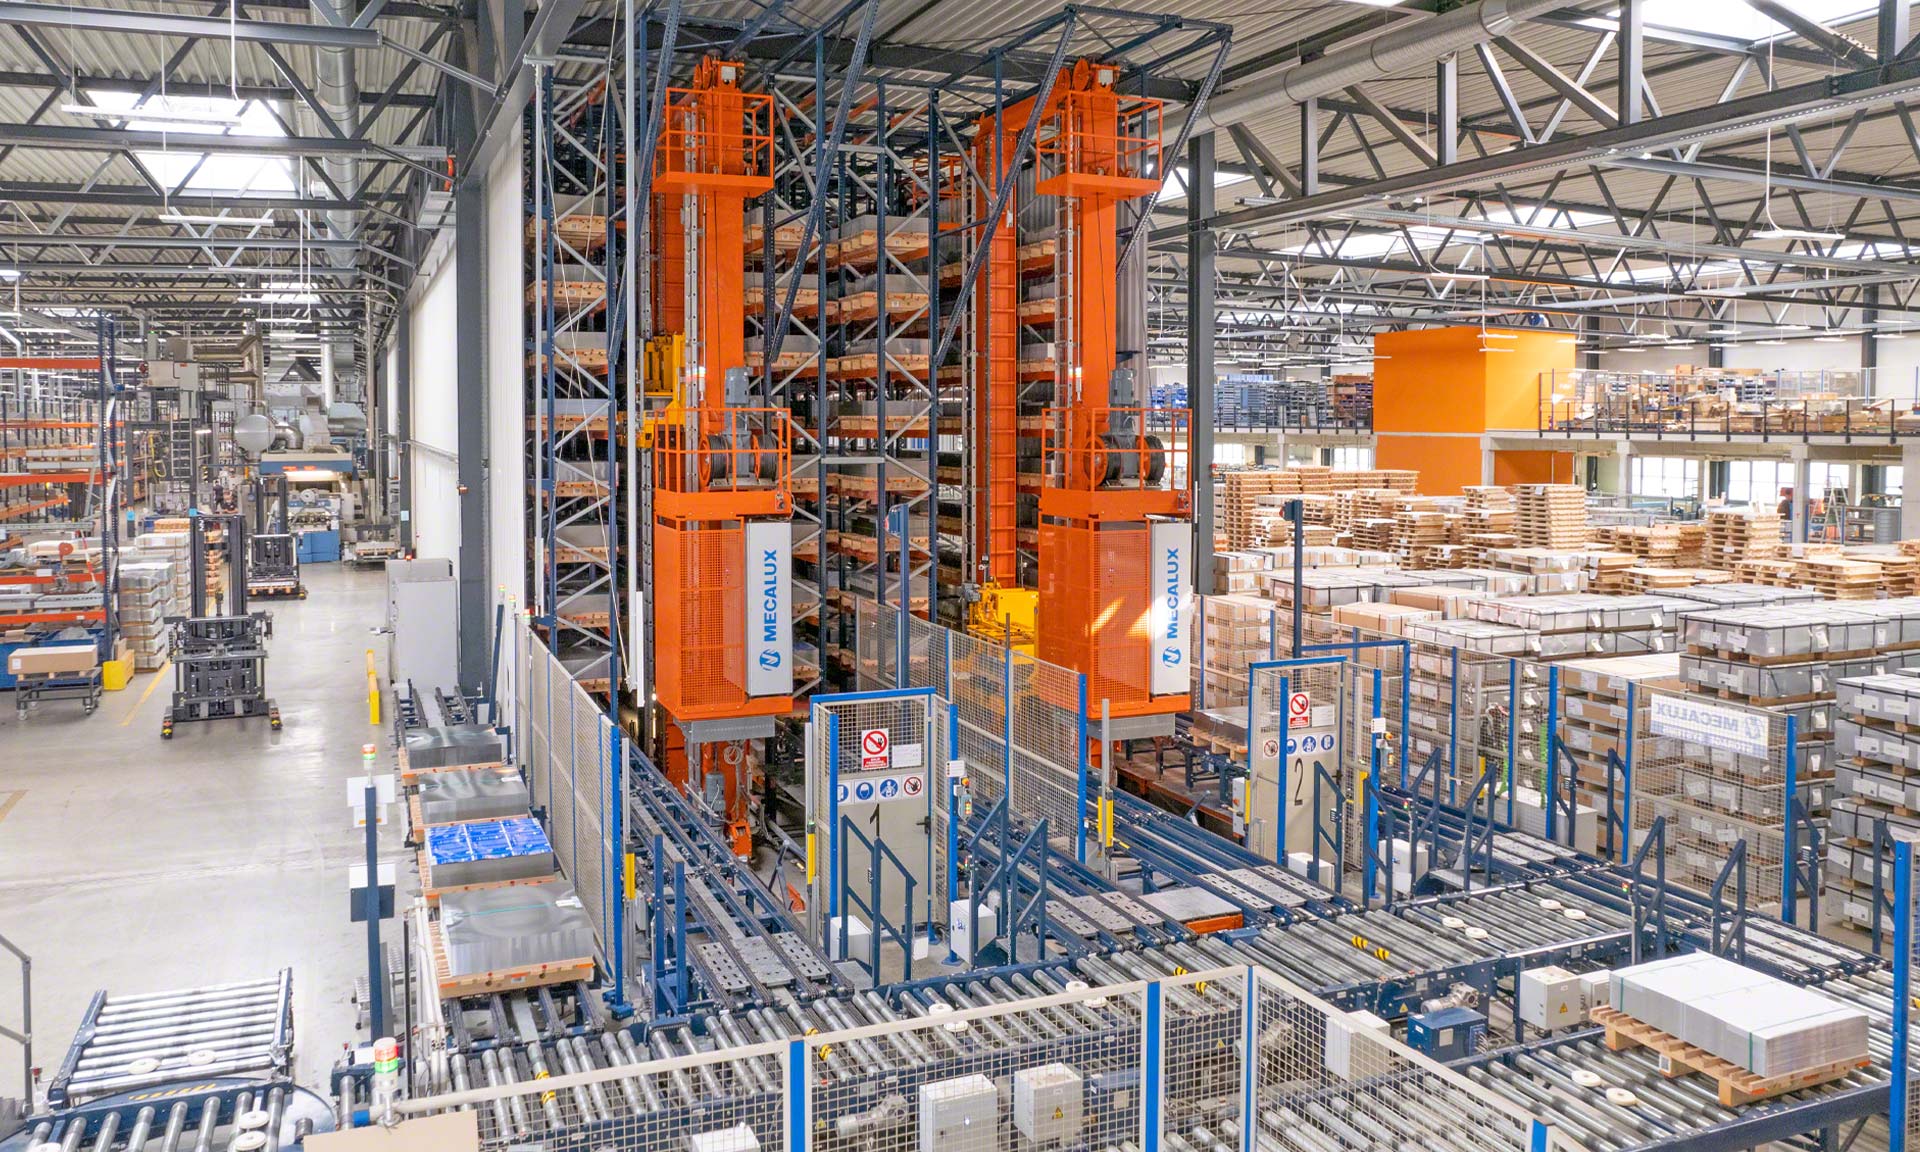 Blechwarenfabrik: la fábrica de envases metálicos más moderna de Europa